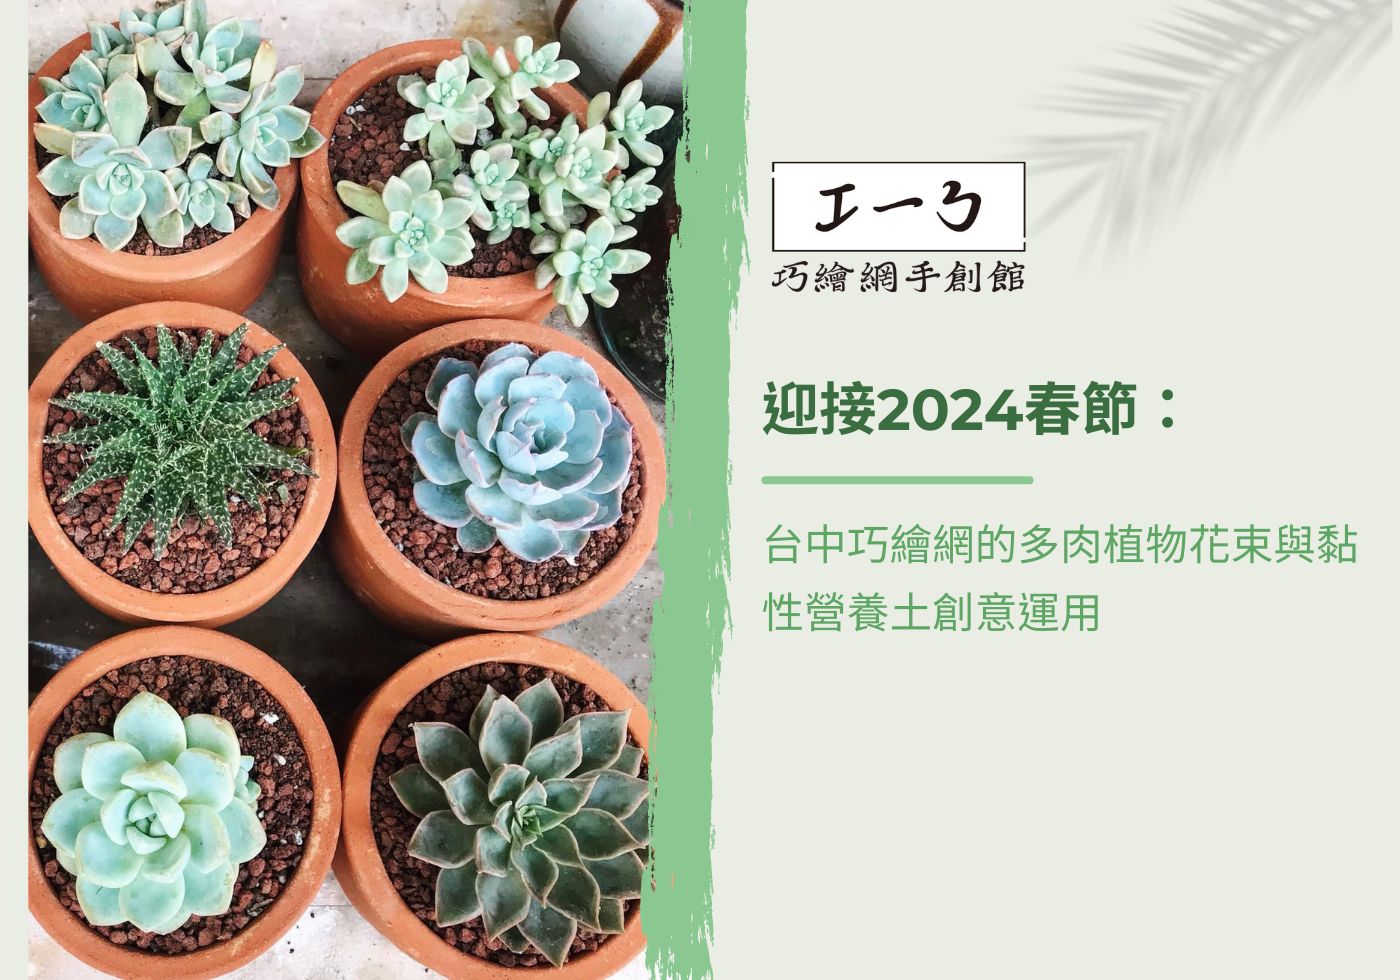 您目前正在查看 迎接2024春節：台中巧繪網的多肉植物花束與黏性營養土創意運用